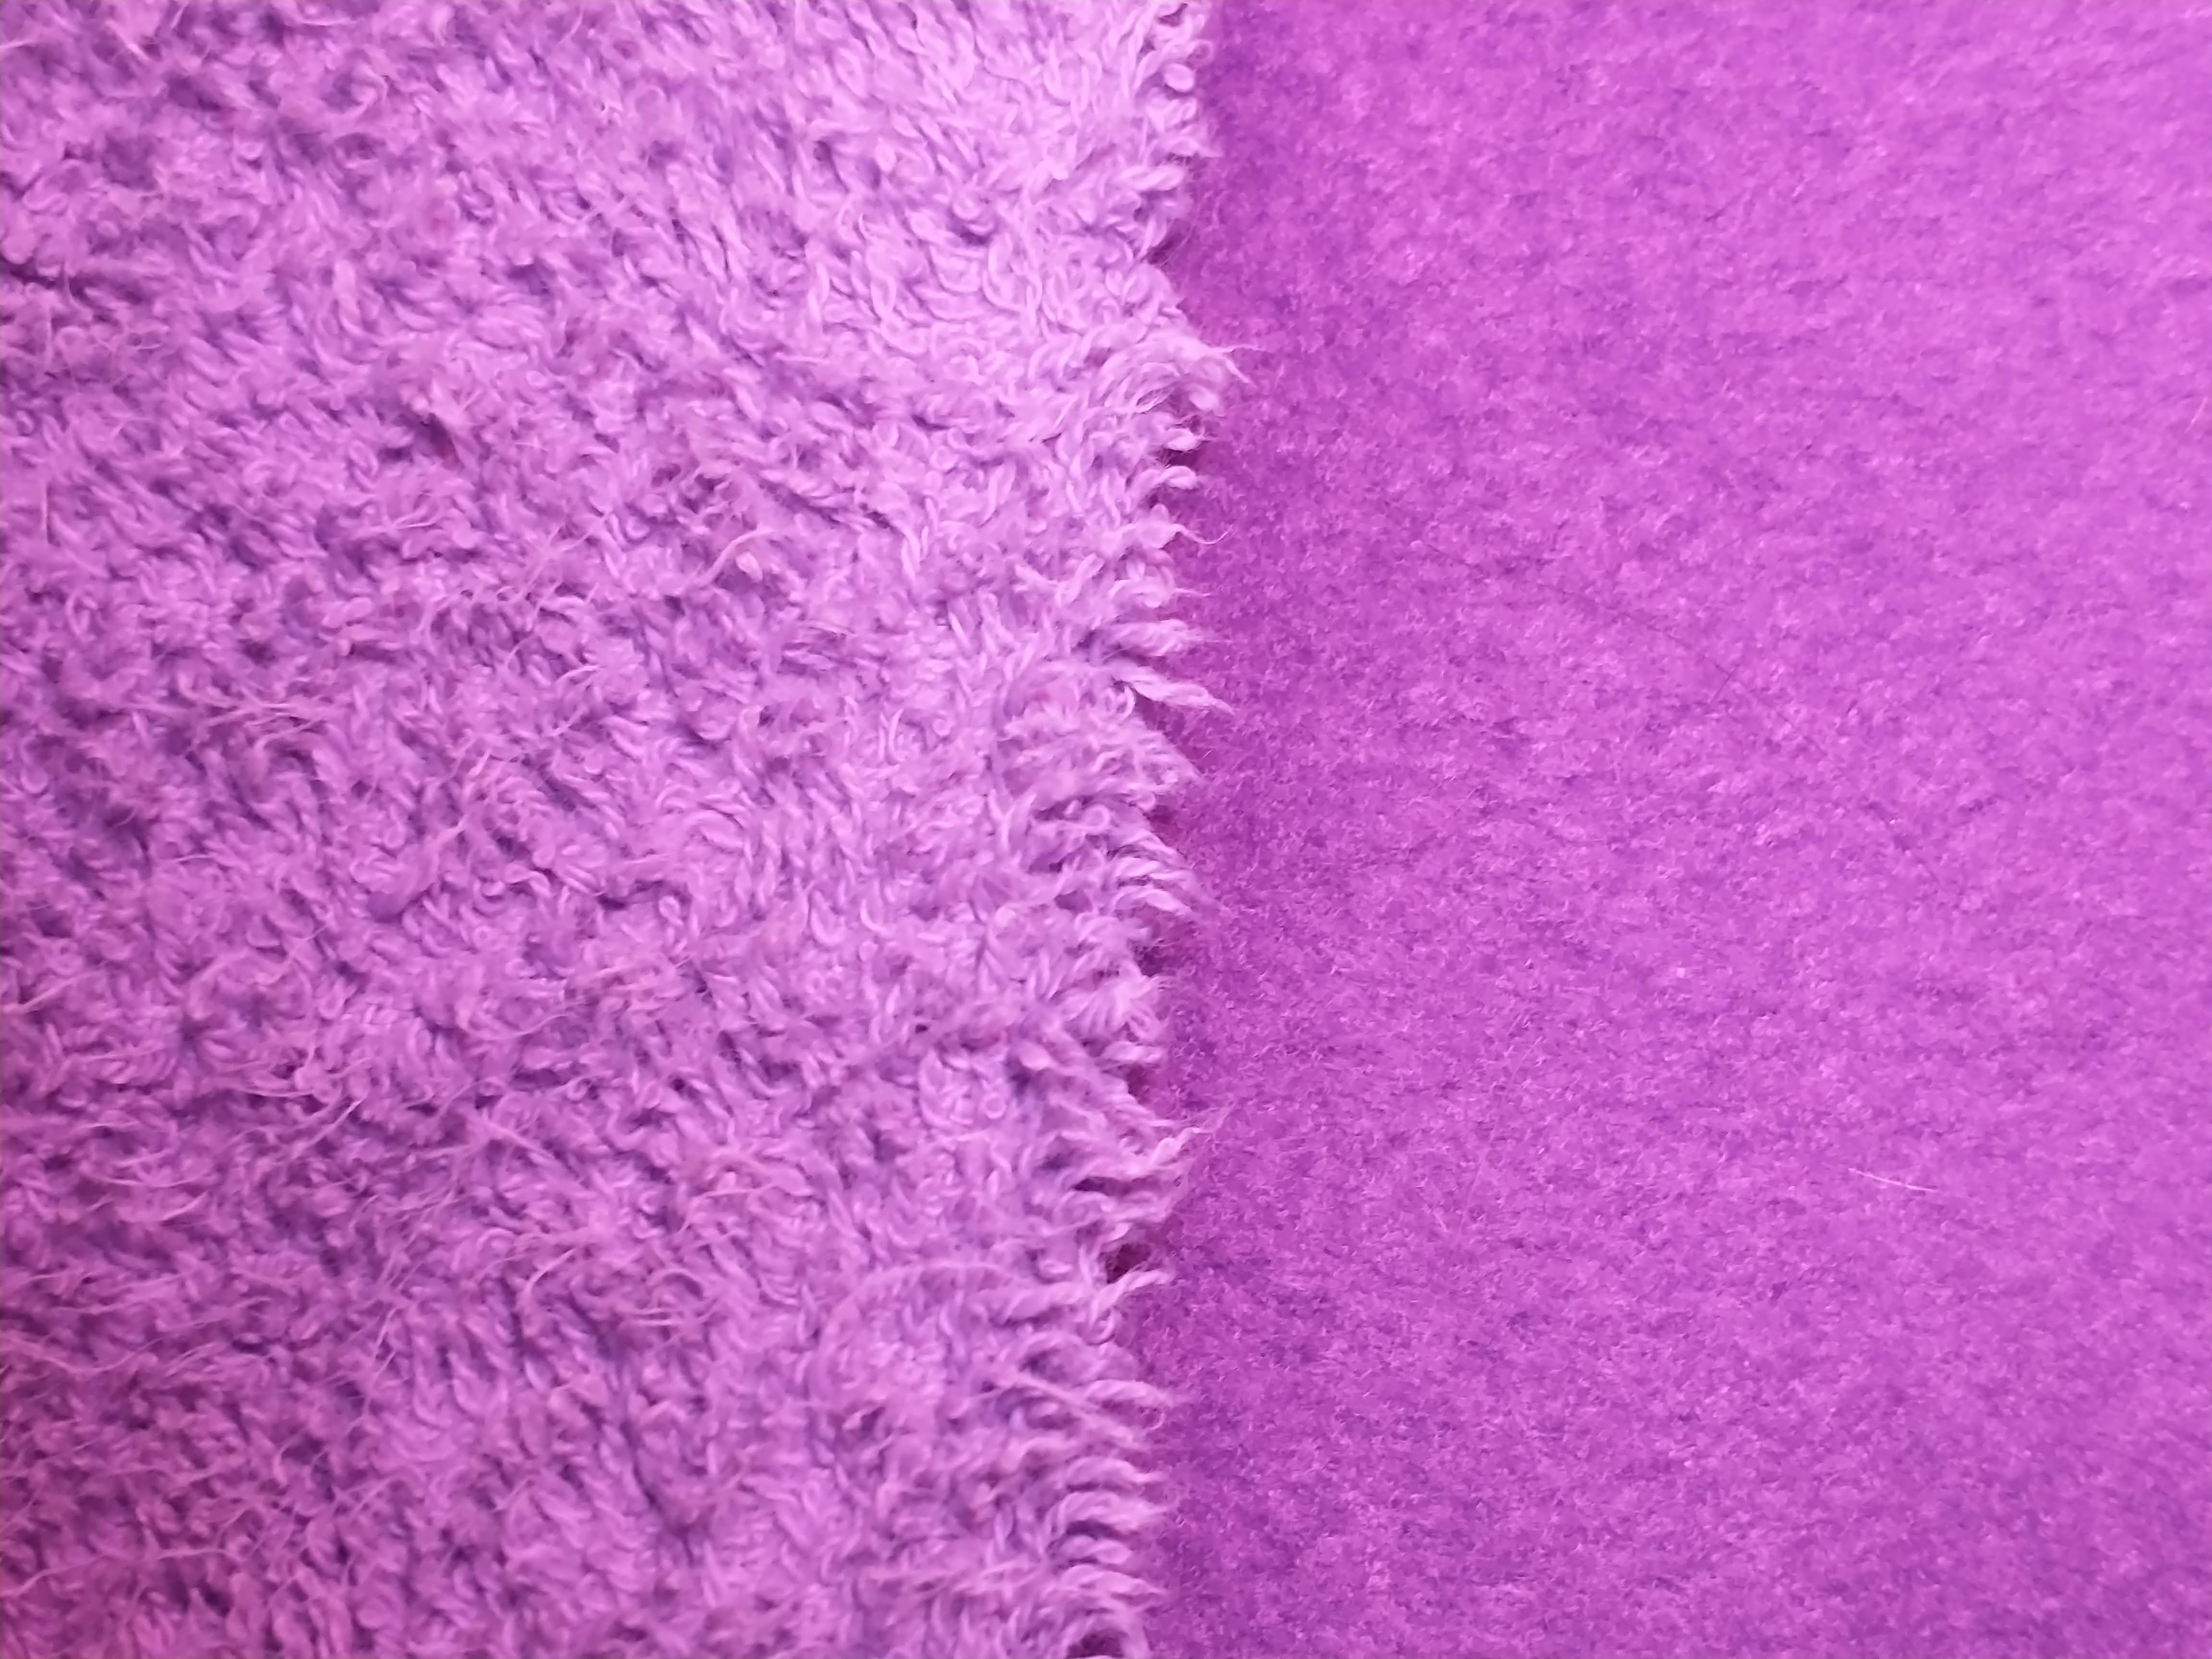 dos telas violetas juntas, una más clara y otra más oscura.